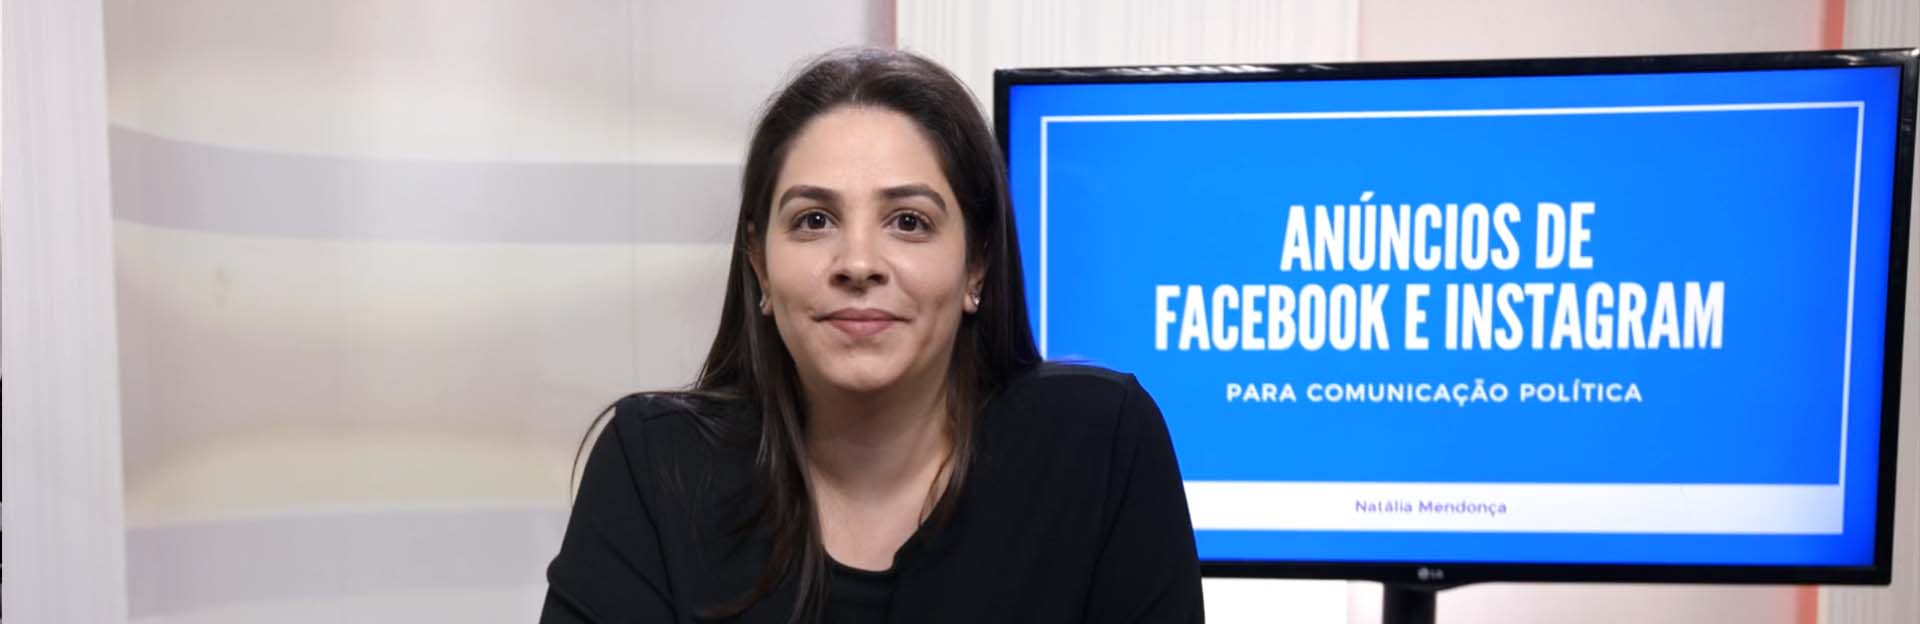 Anúncios de Facebook e Instagram para políticos e candidatos Natália Mendonça